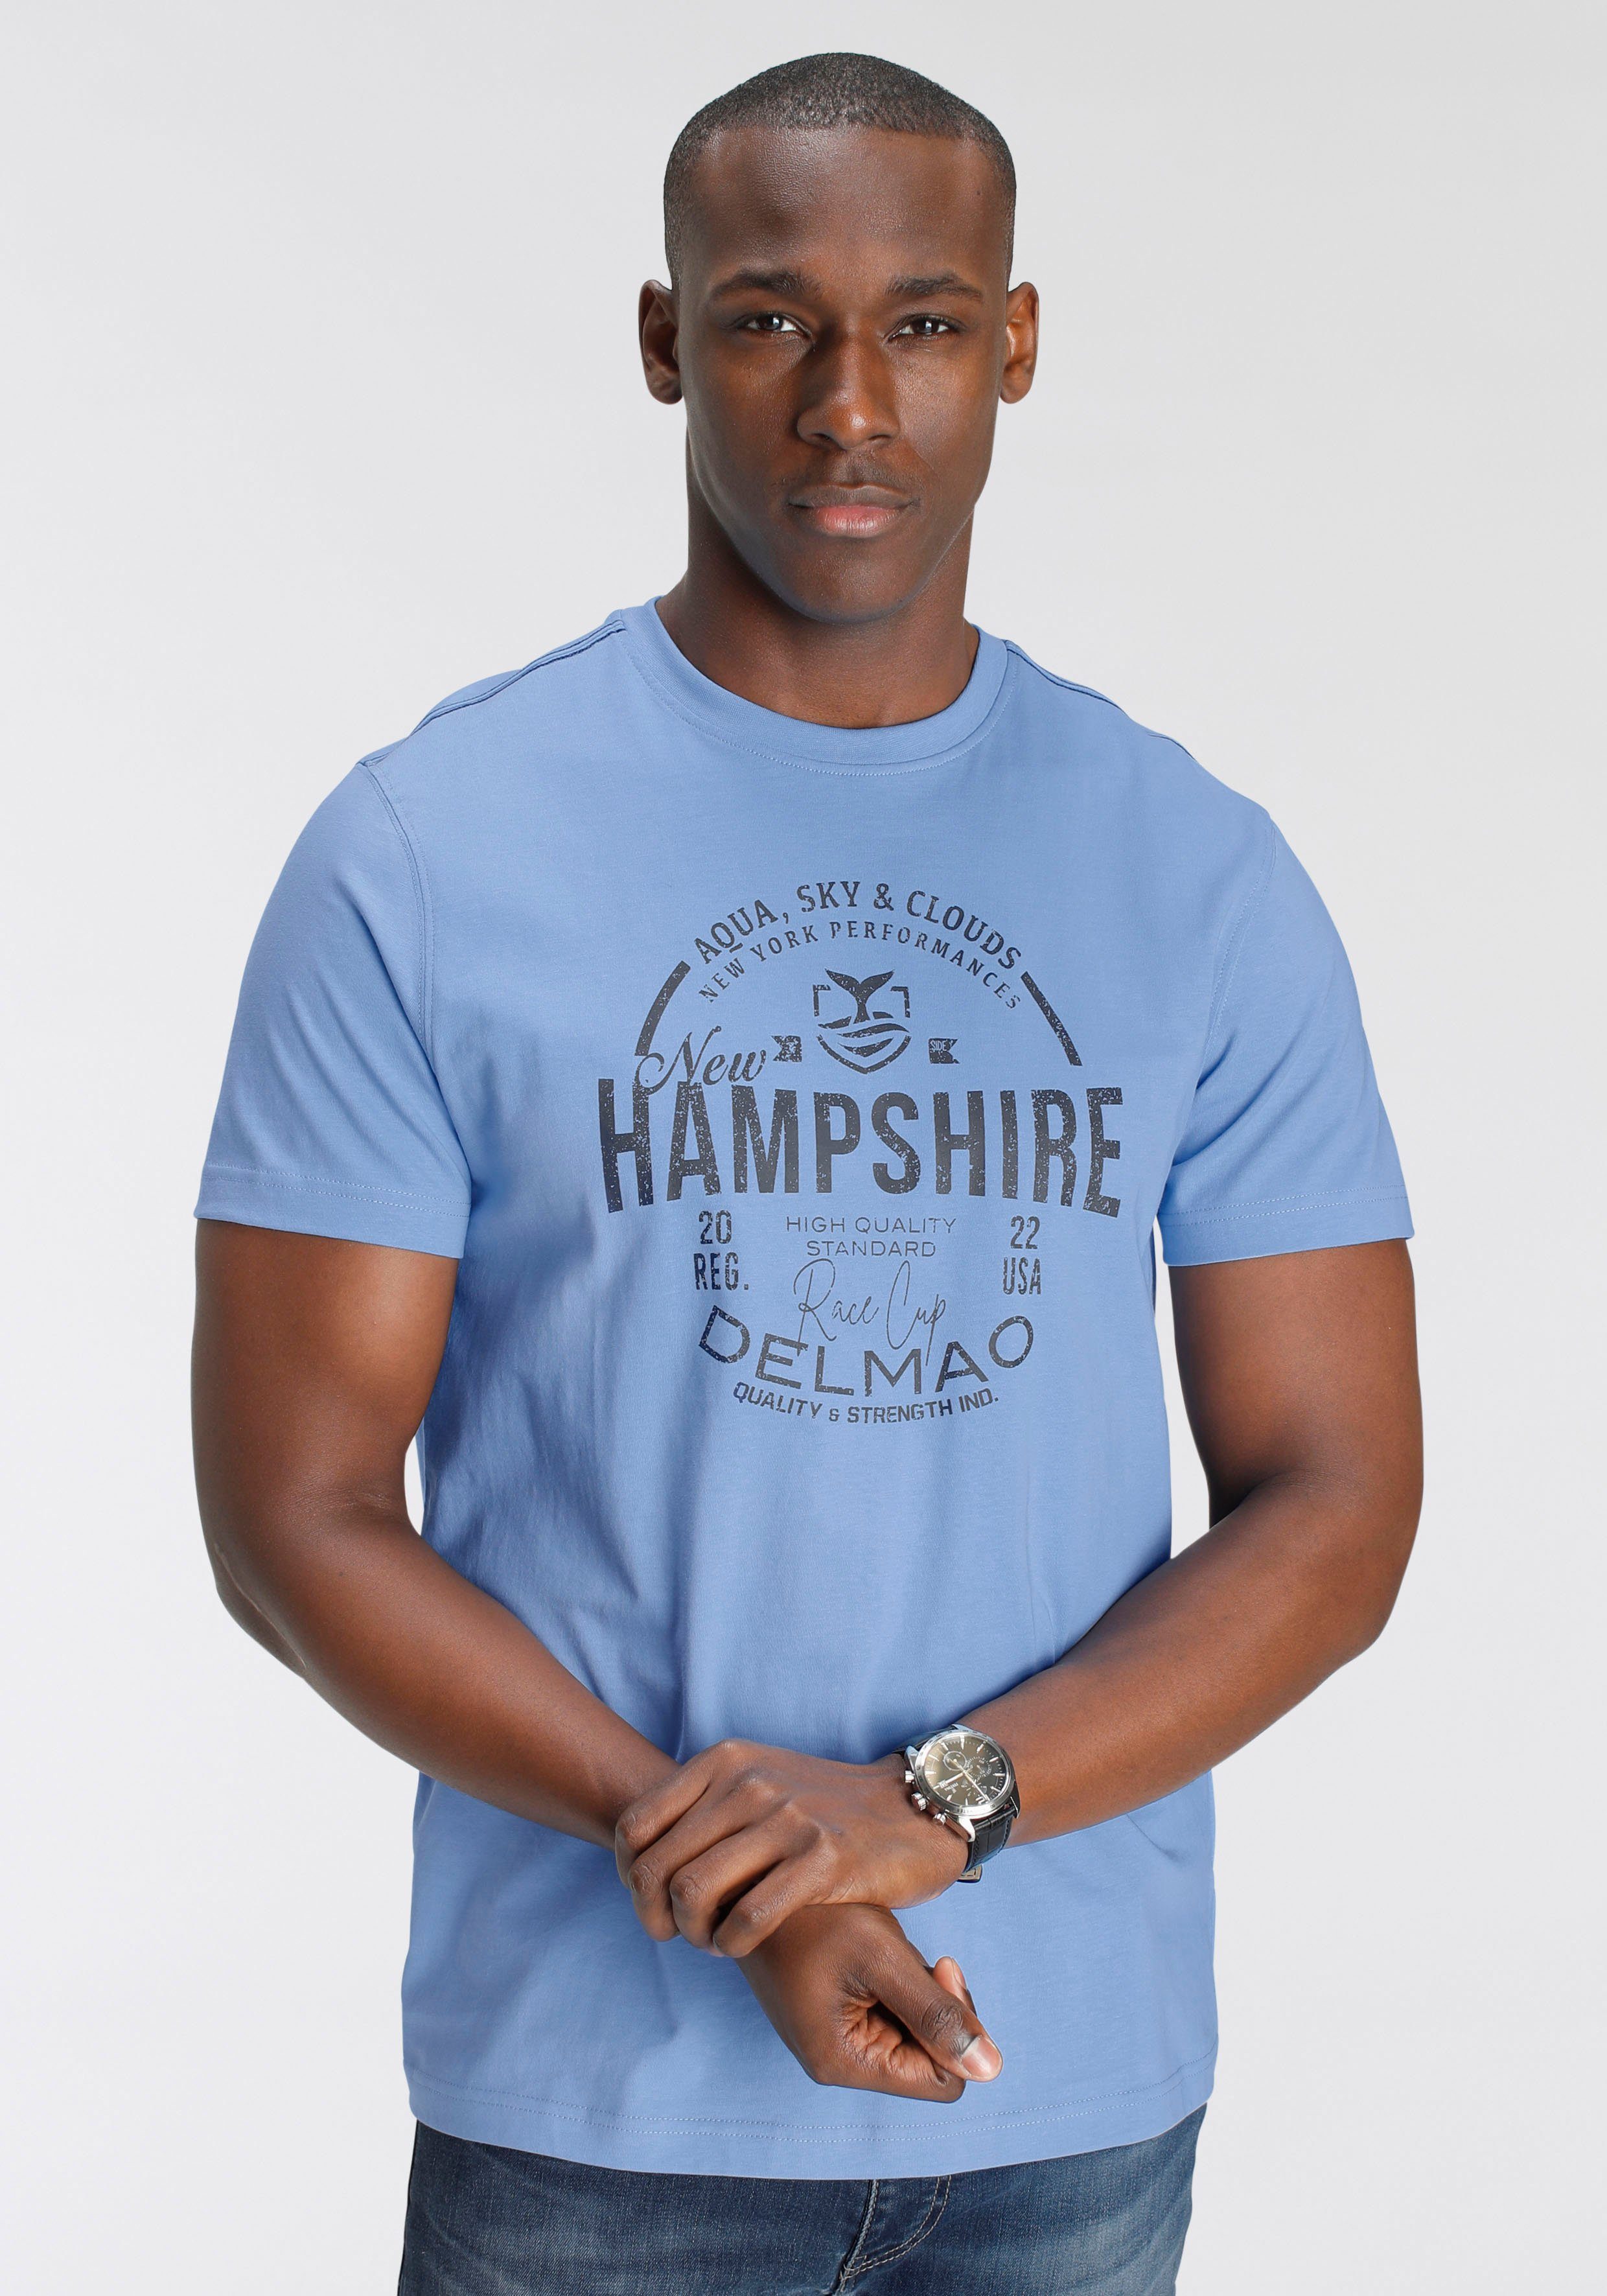 DELMAO T-Shirt mit Brustprint angenehme NEUE MARKE!, pflegleichte für anthrazit - melange) Baumwoll-Qualität/-(Mischung